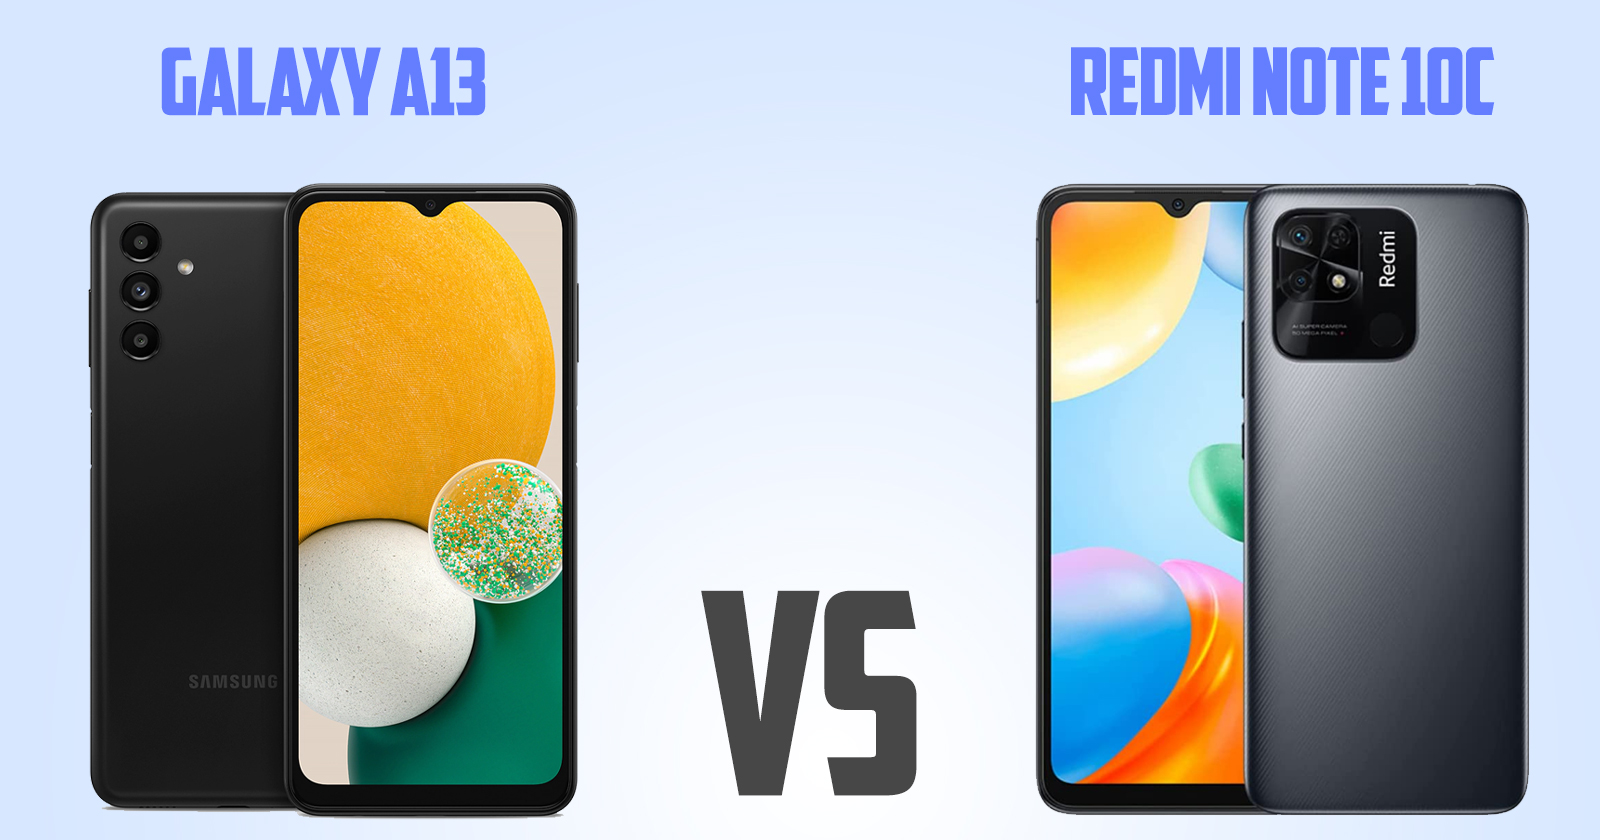 Samsung Galaxy A13 vs Redmi Note 10c